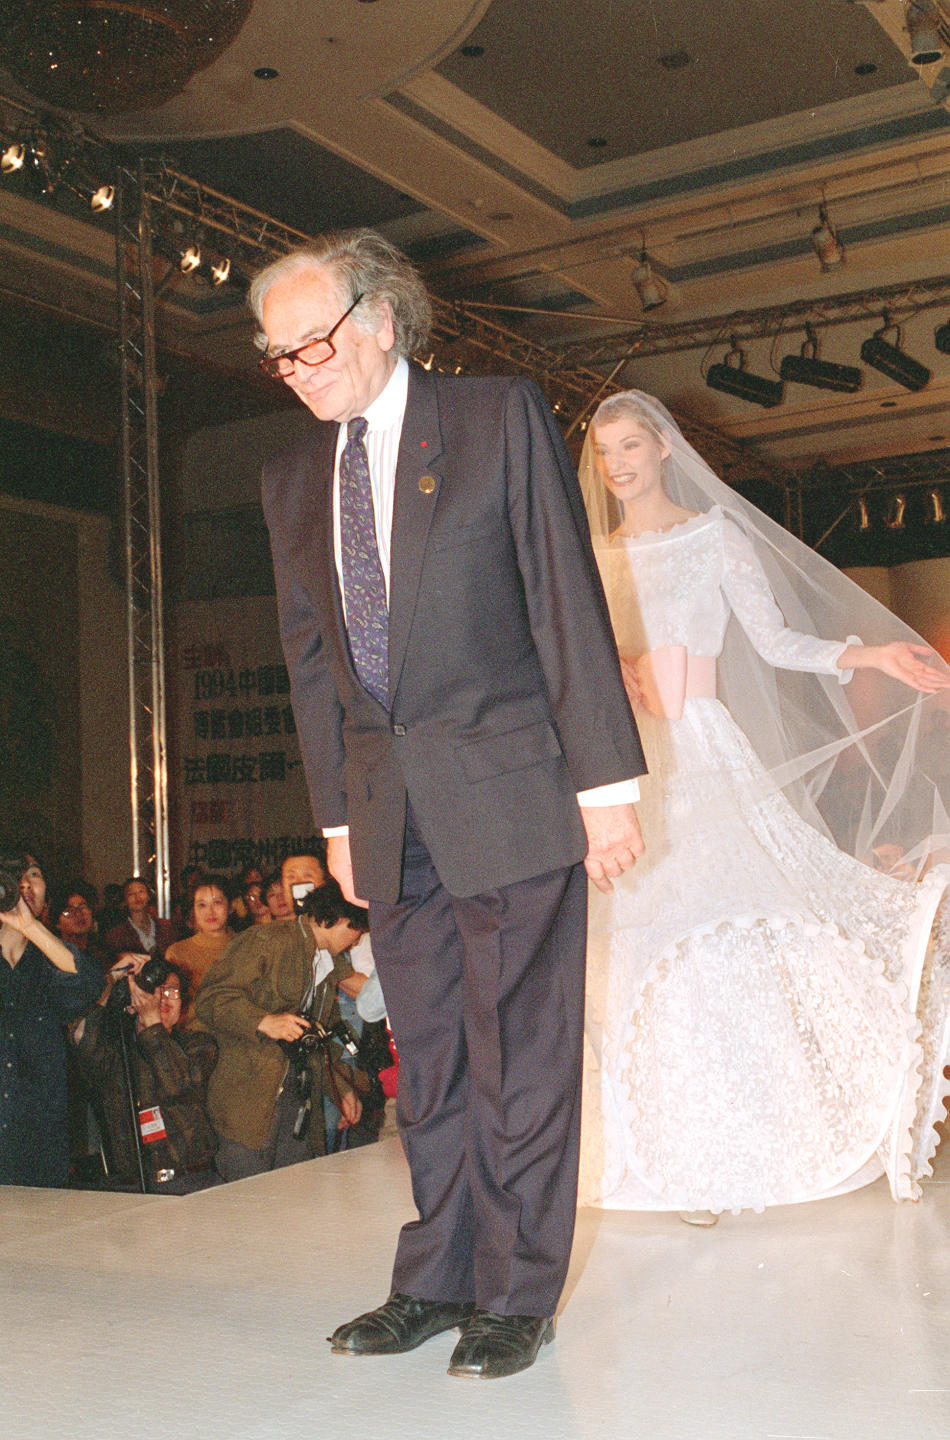 94中國國際服裝服飾博覽會于4月27日至5月1日在北京國際貿易中心舉行法國服裝設計大師皮爾·卡丹第20次來華，並參加在北京舉行的國際服飾博覽會。會上皮爾·卡丹舉辦了專場時裝表演。新華社記者戴紀明攝（1994年5月25日發）